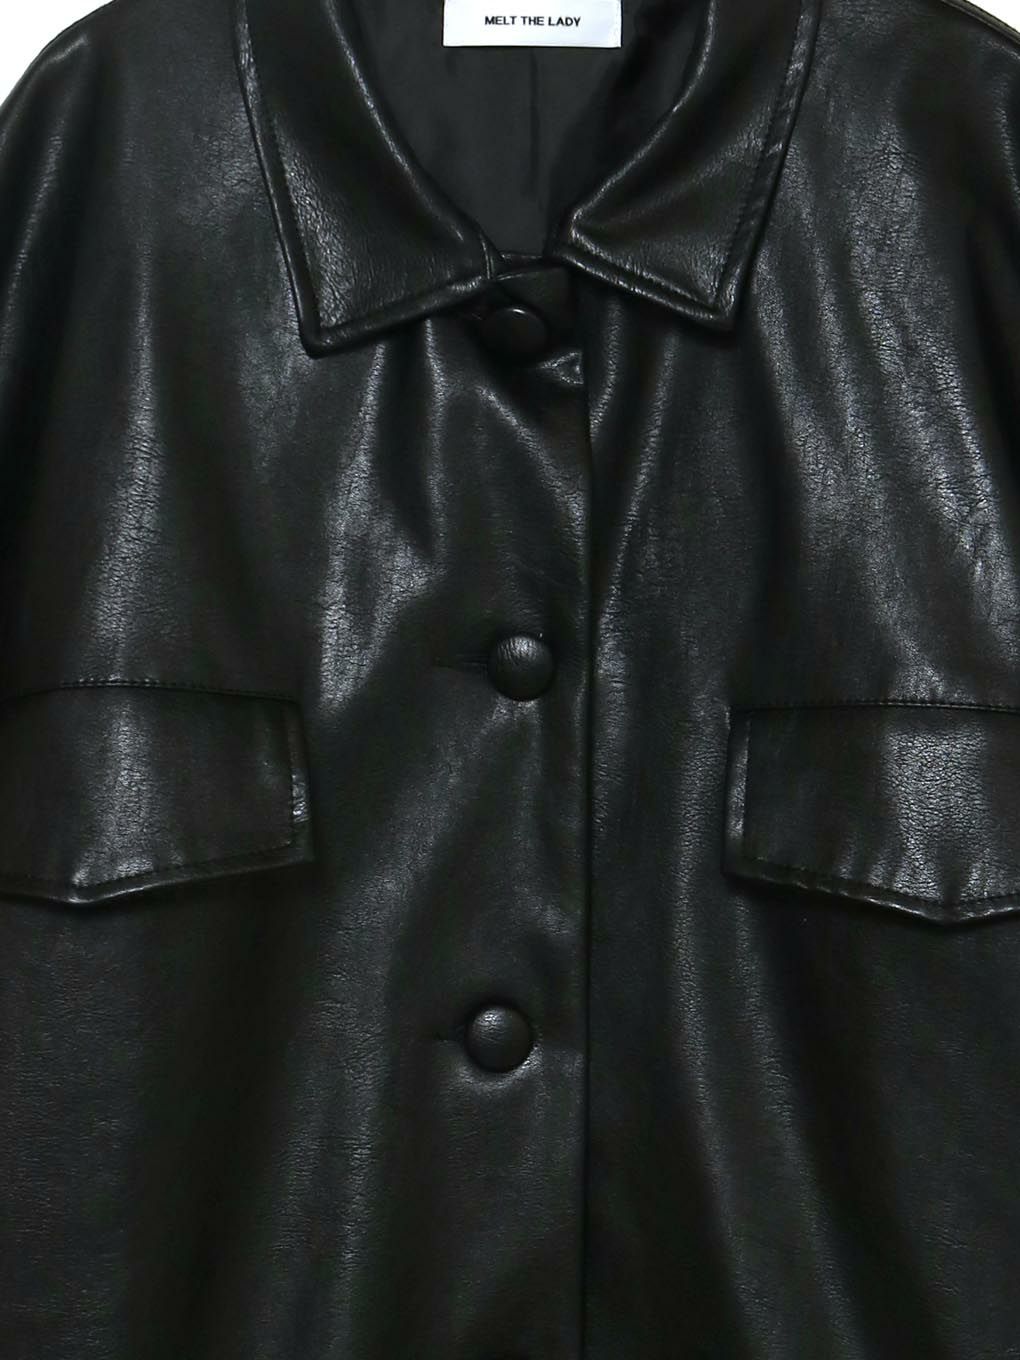 leather like jacket